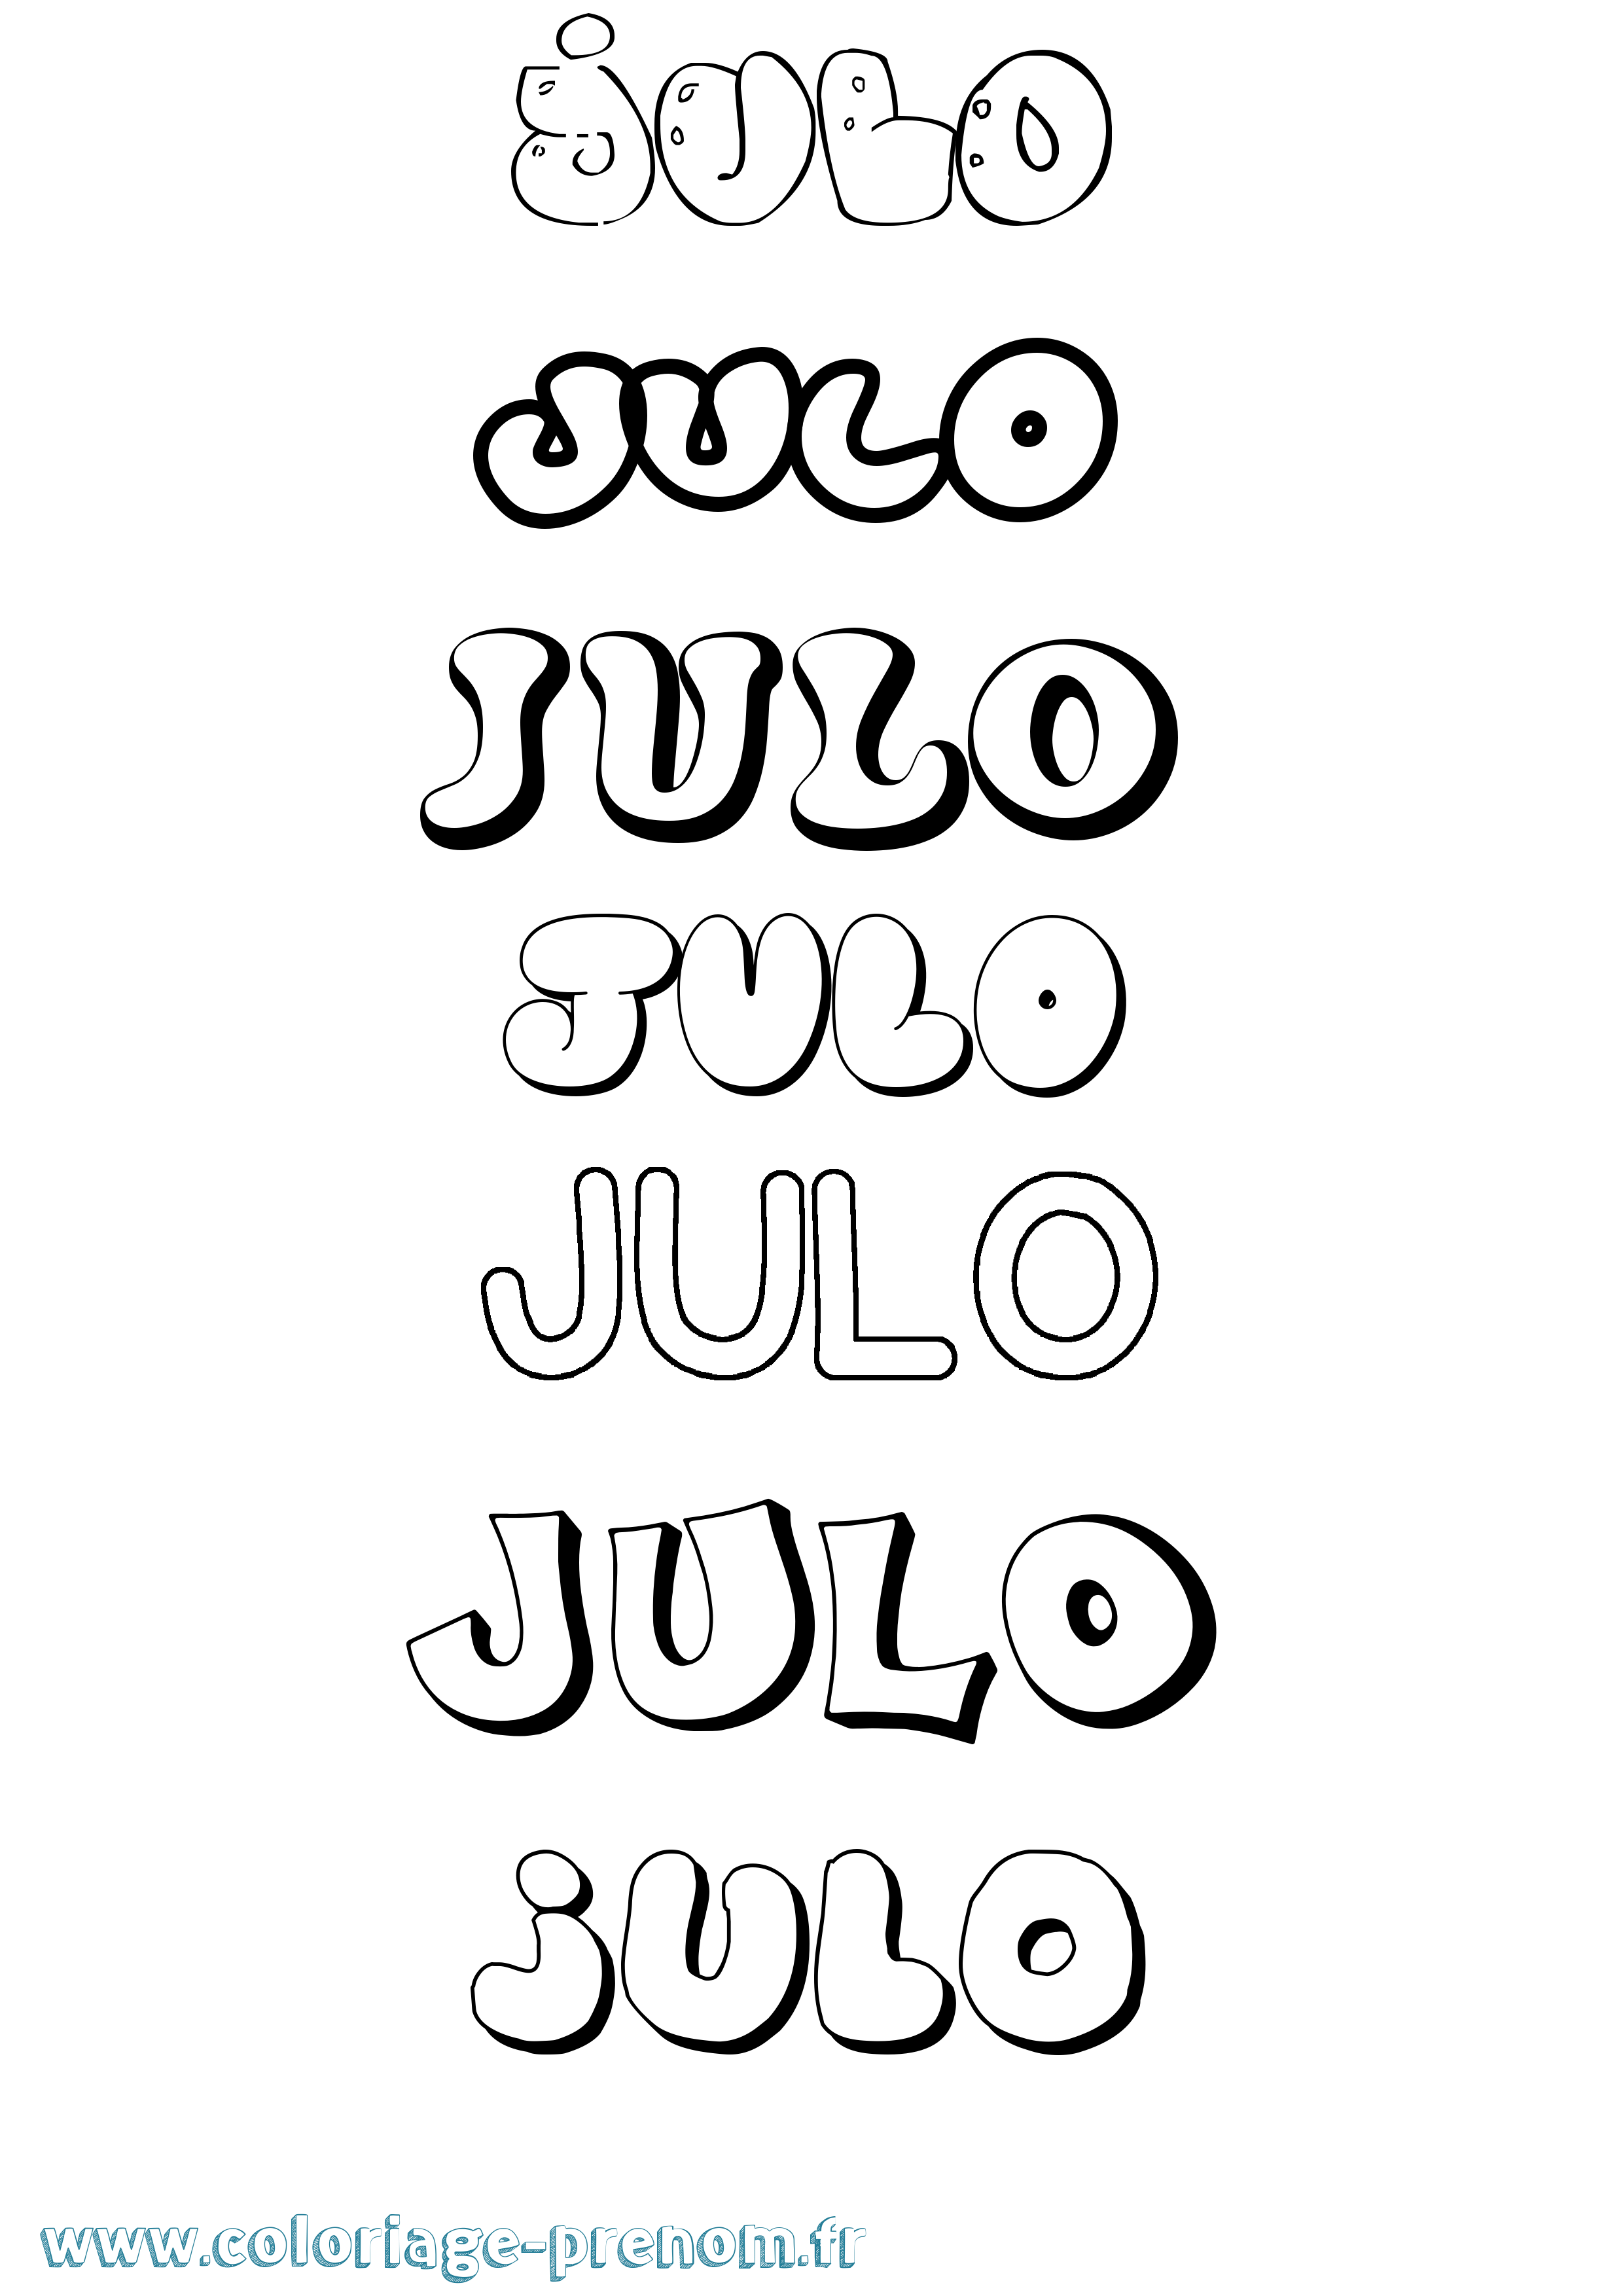 Coloriage prénom Julo Bubble